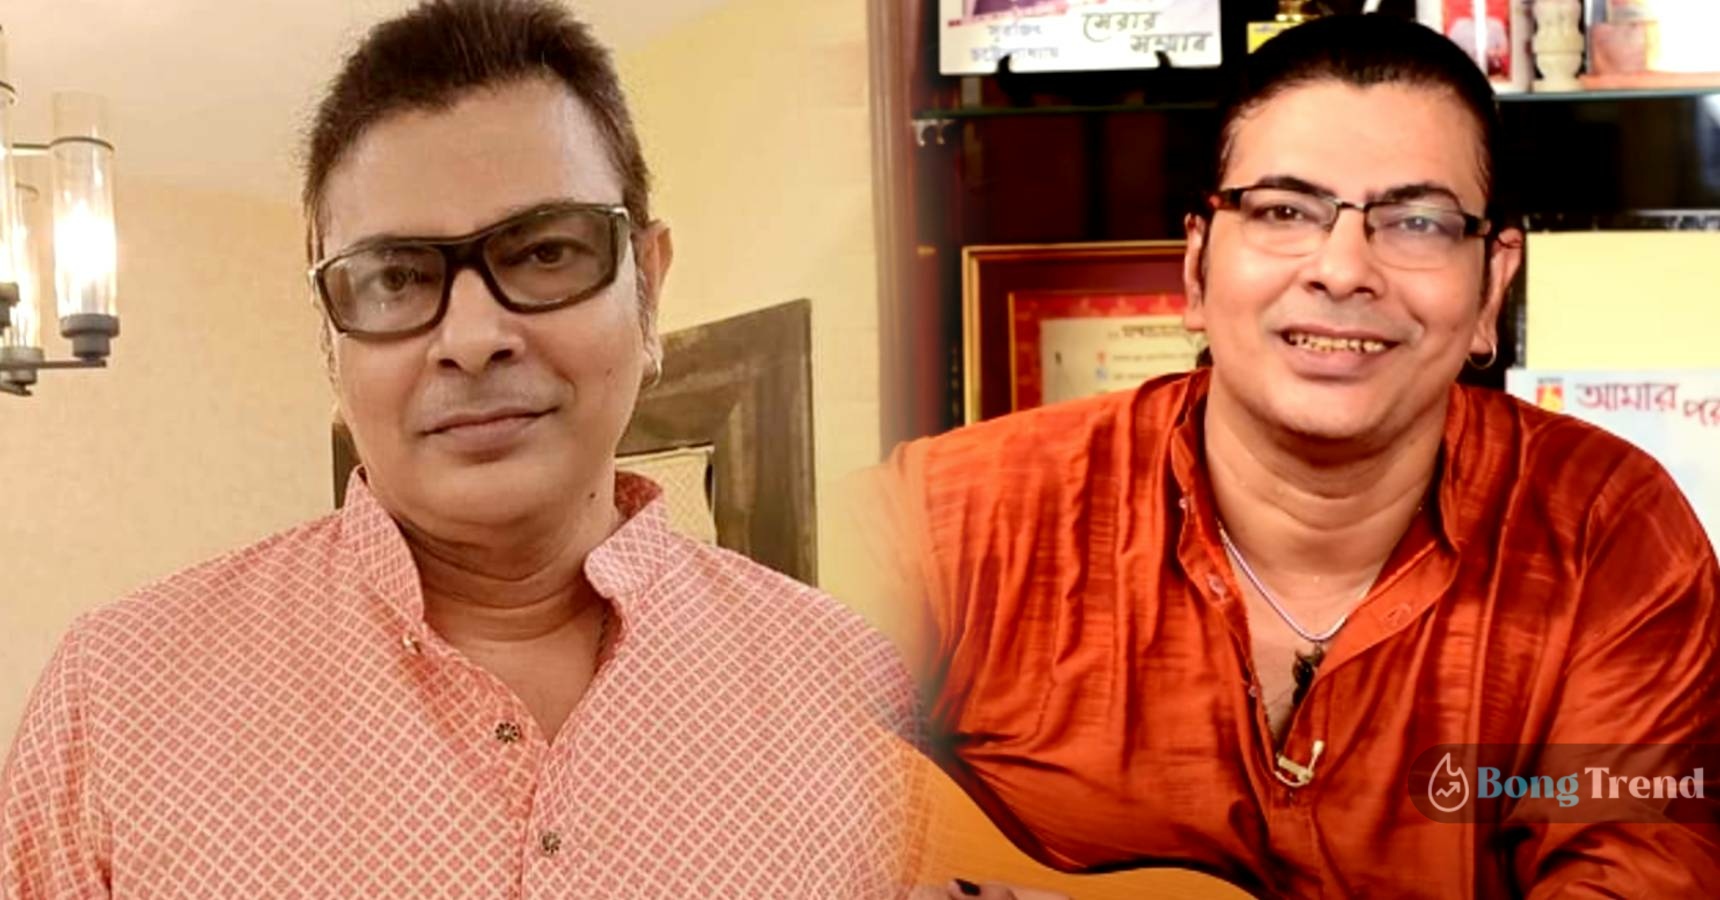 Barandaye Roddur fame singer Surojit Chatterjee is hospitalized